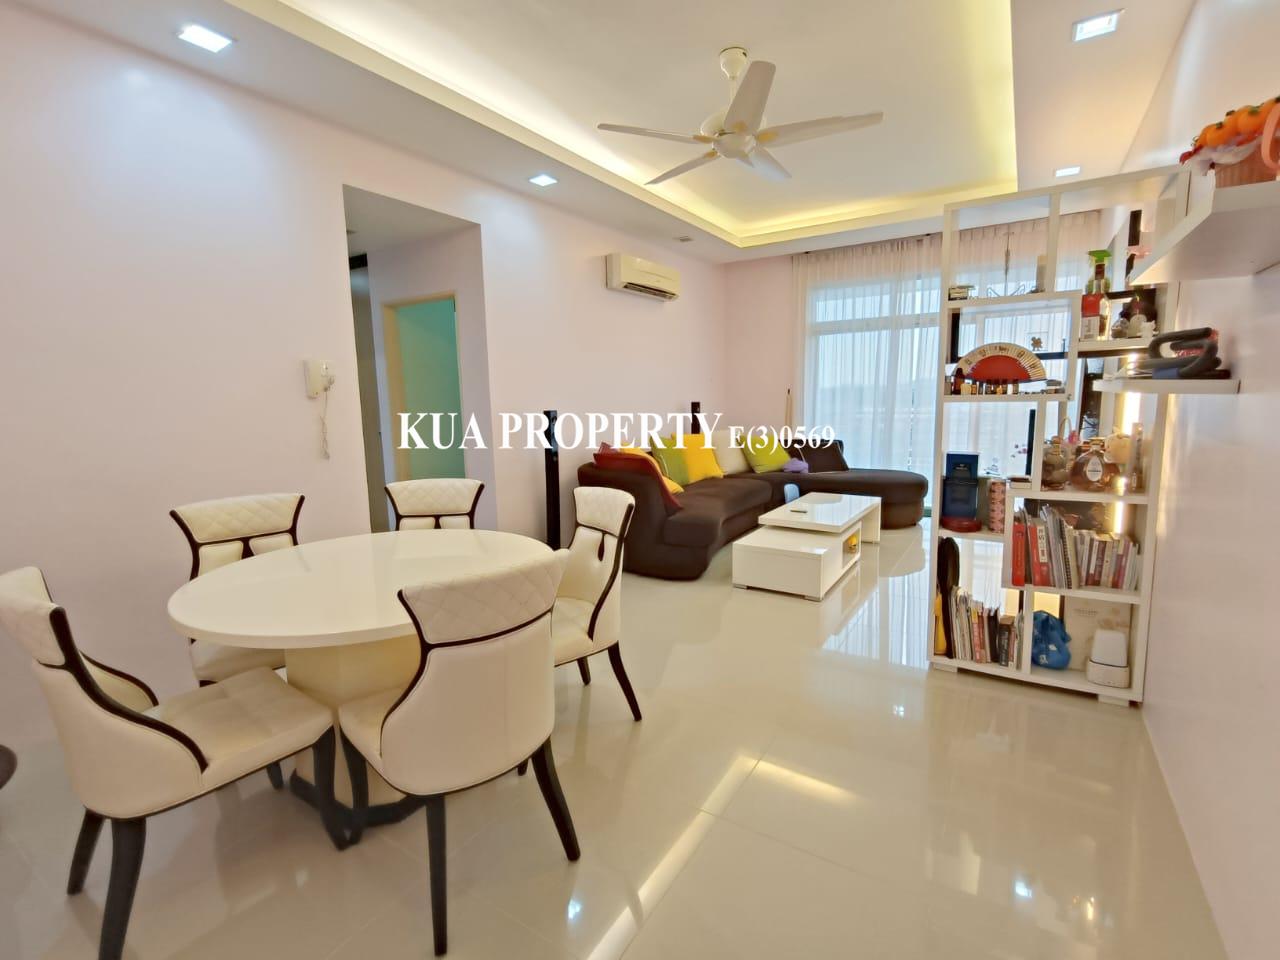 MJC Sky Villa Condominium For Rent! at MJC Batu Kawa